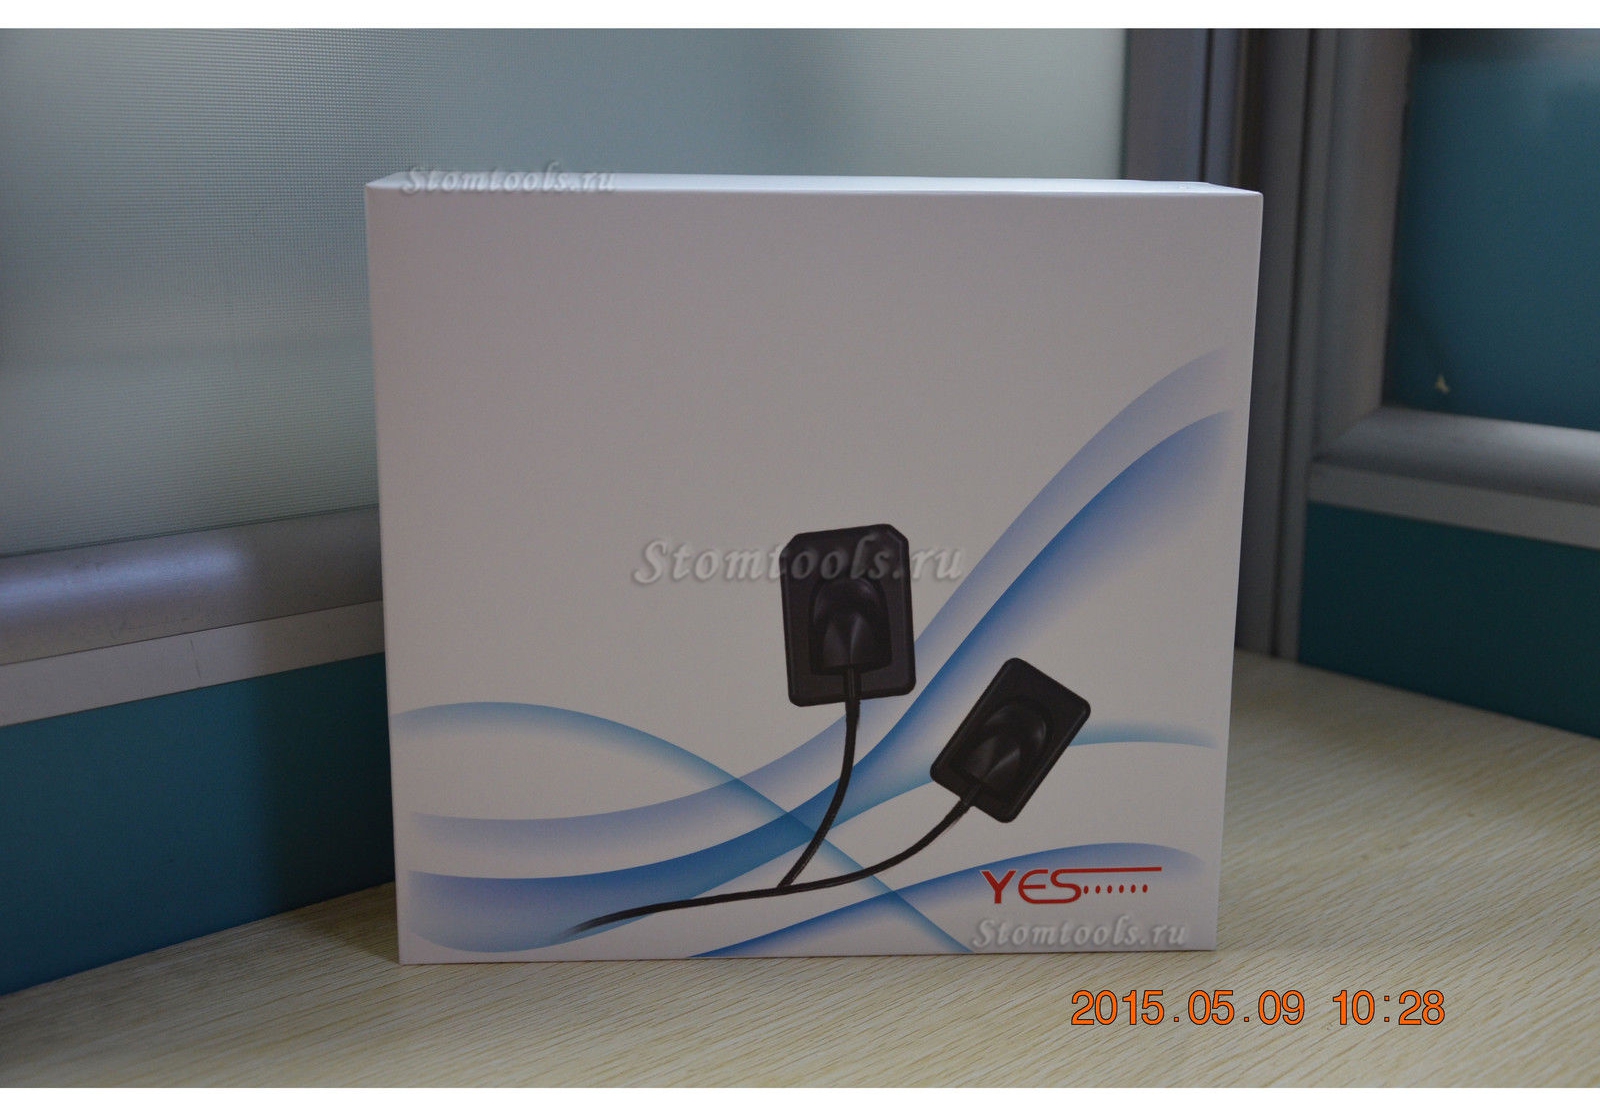 Yesbiotech внутренные устные беспроводной рентгеновского датчик систему изображения стоматологических USB - цифровой